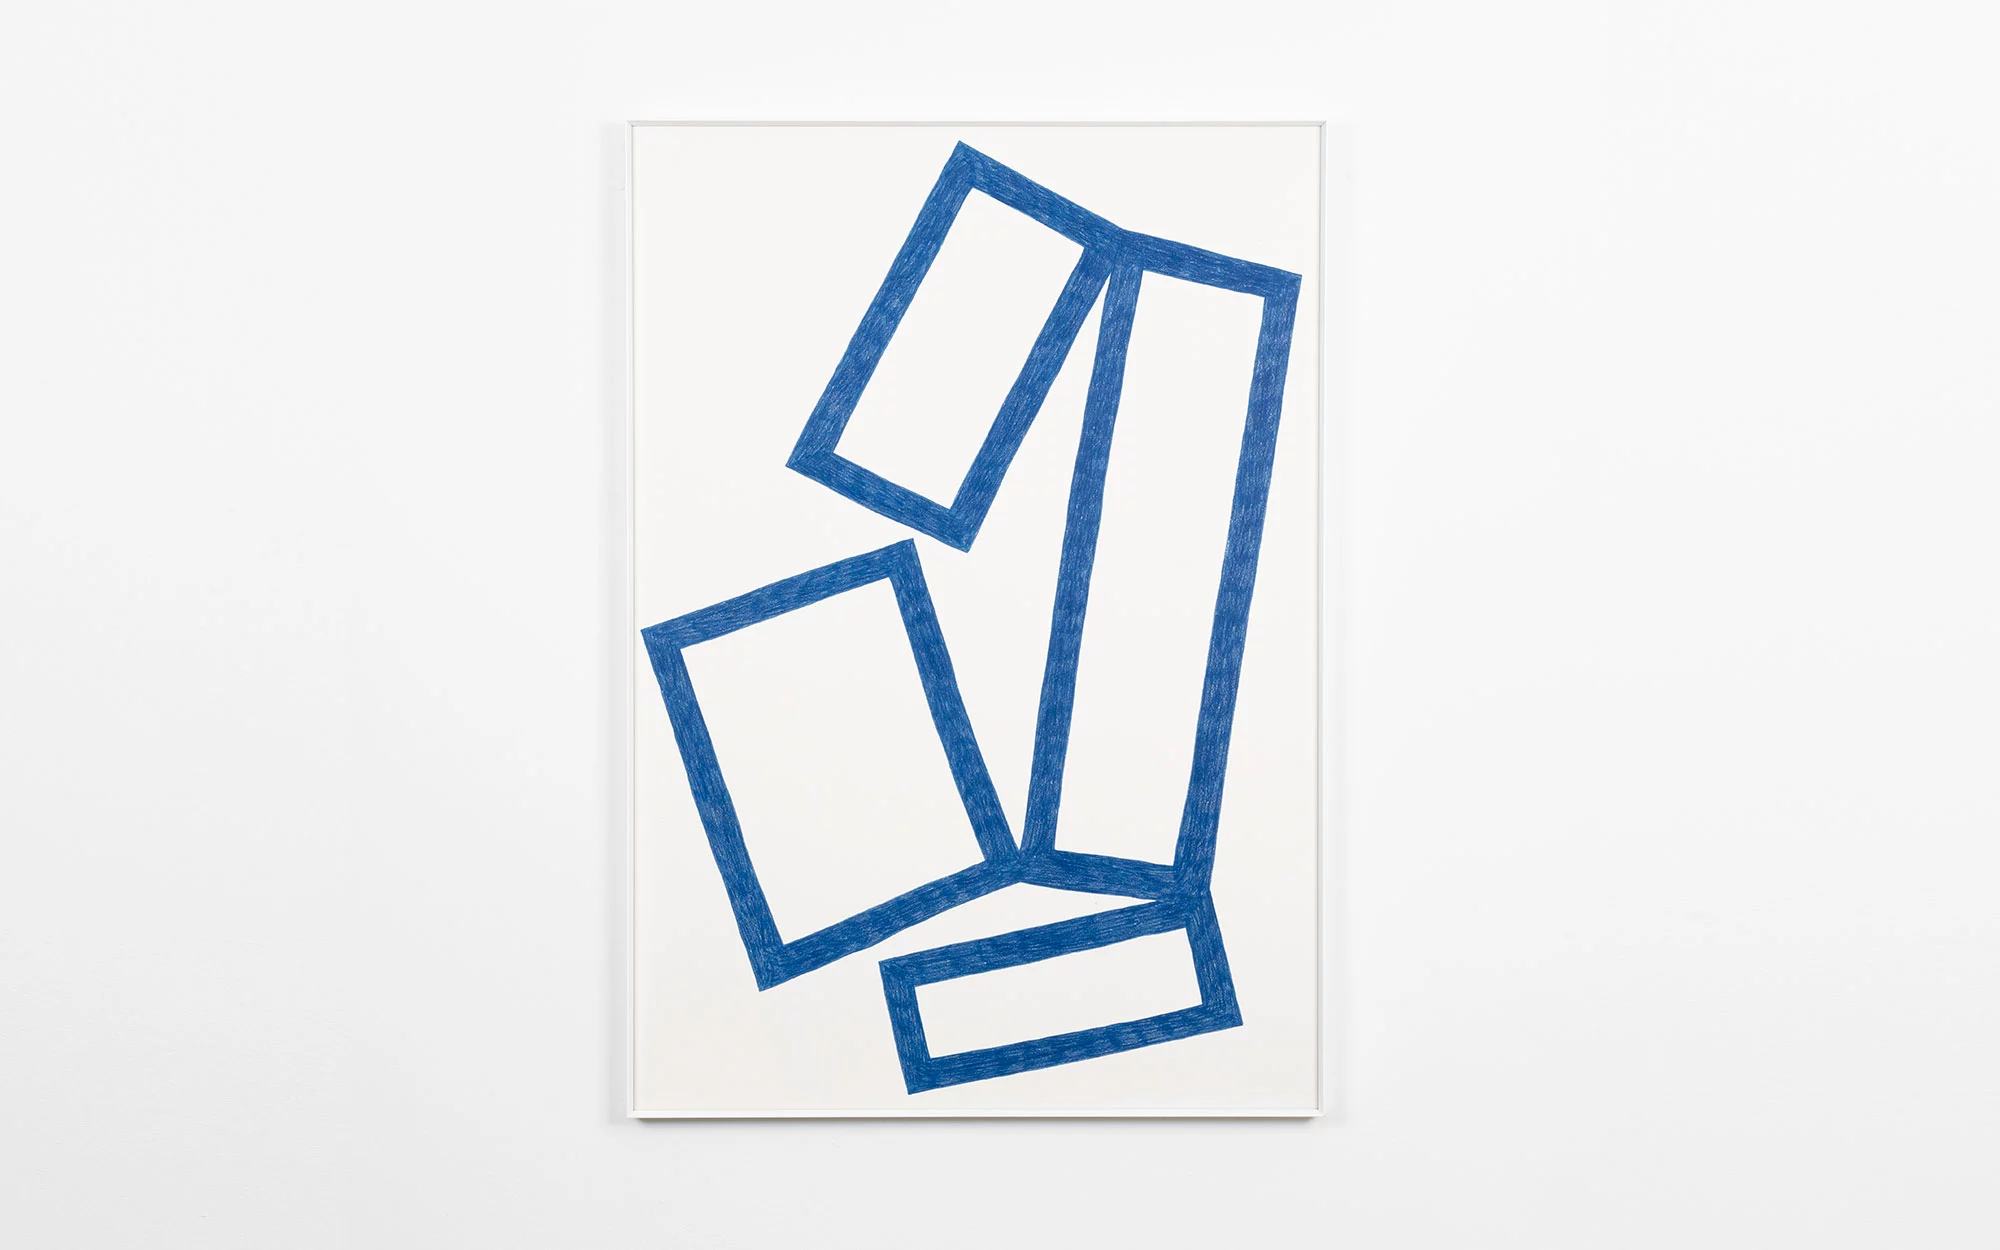 Cubes Drawings - Pierre Charpin - Desk - Galerie kreo